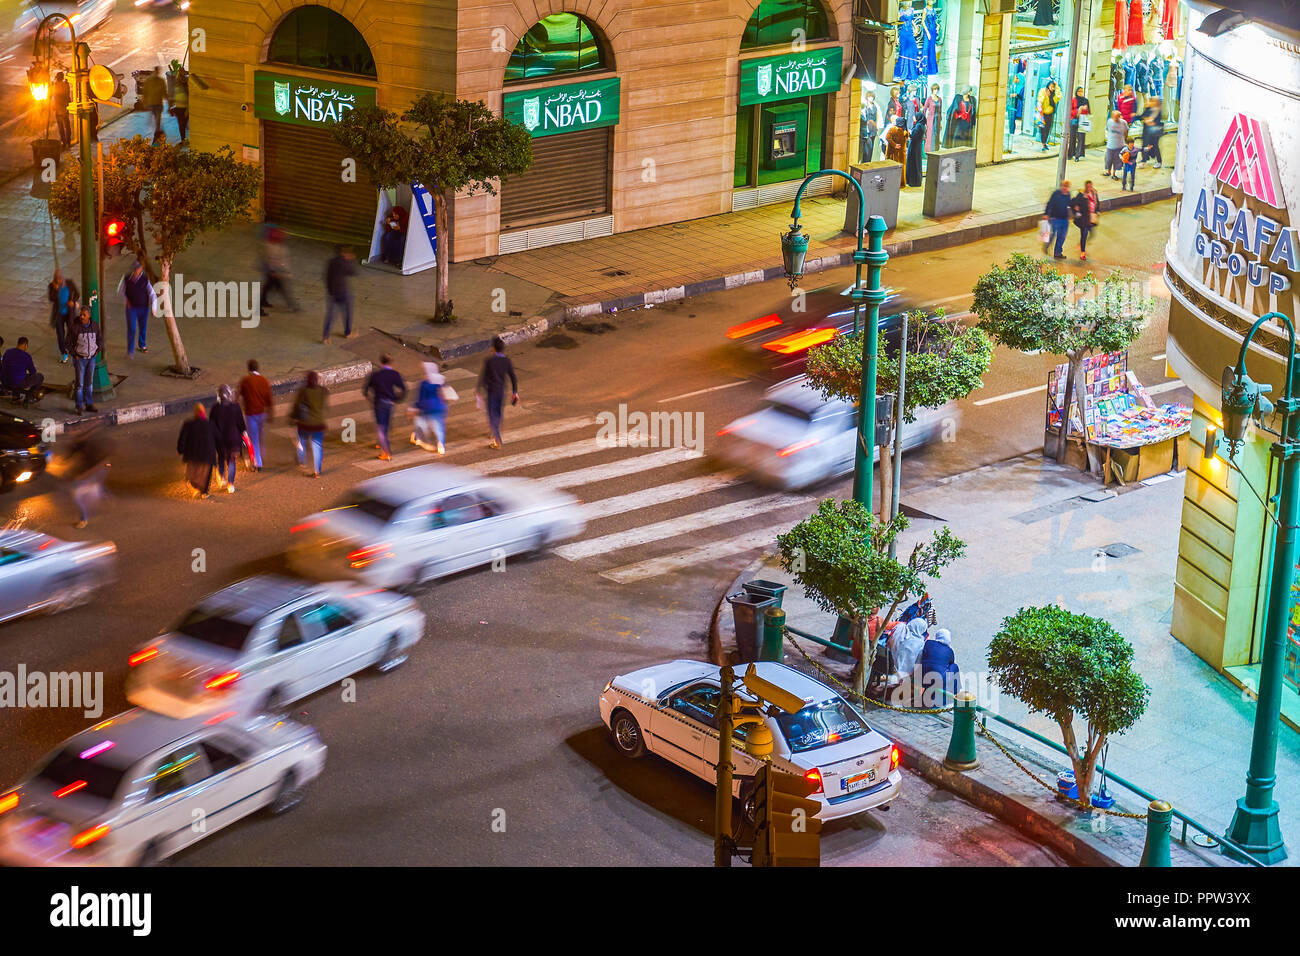 Il Cairo, Egitto - 23 dicembre 2017: La scena urbana a Talaat Harb sqaure con pedoni che attraversano la strada e in rapido movimento di auto, il 23 dicembre in C Foto Stock